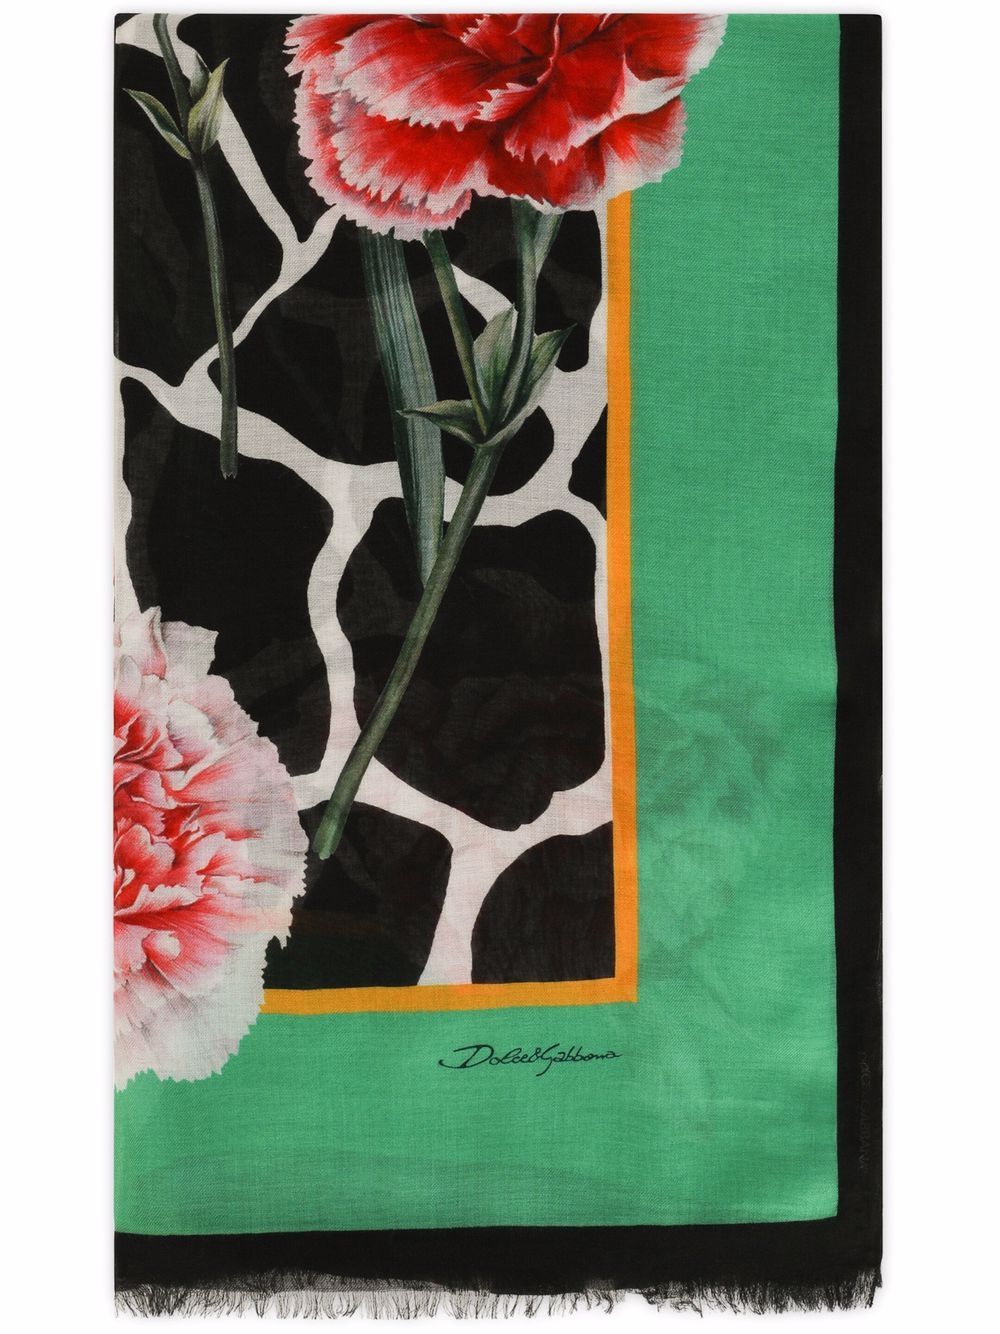 фото Dolce & gabbana шарф с цветочным принтом